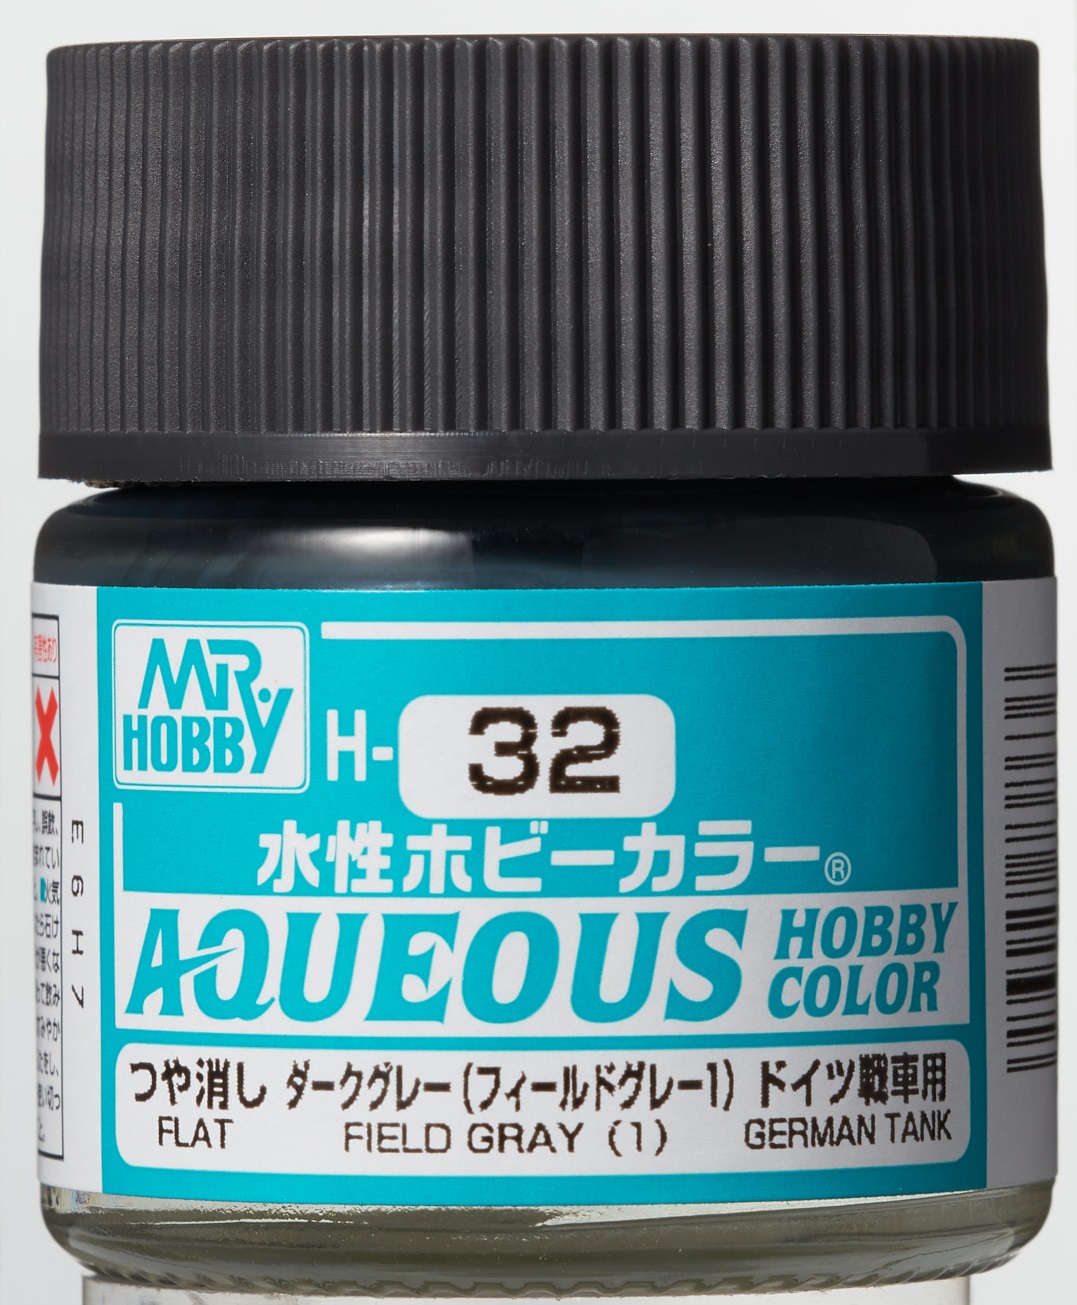 Mr. Aqueous Hobby Color - Field Gray 1 - H32 - Feld Grau 1